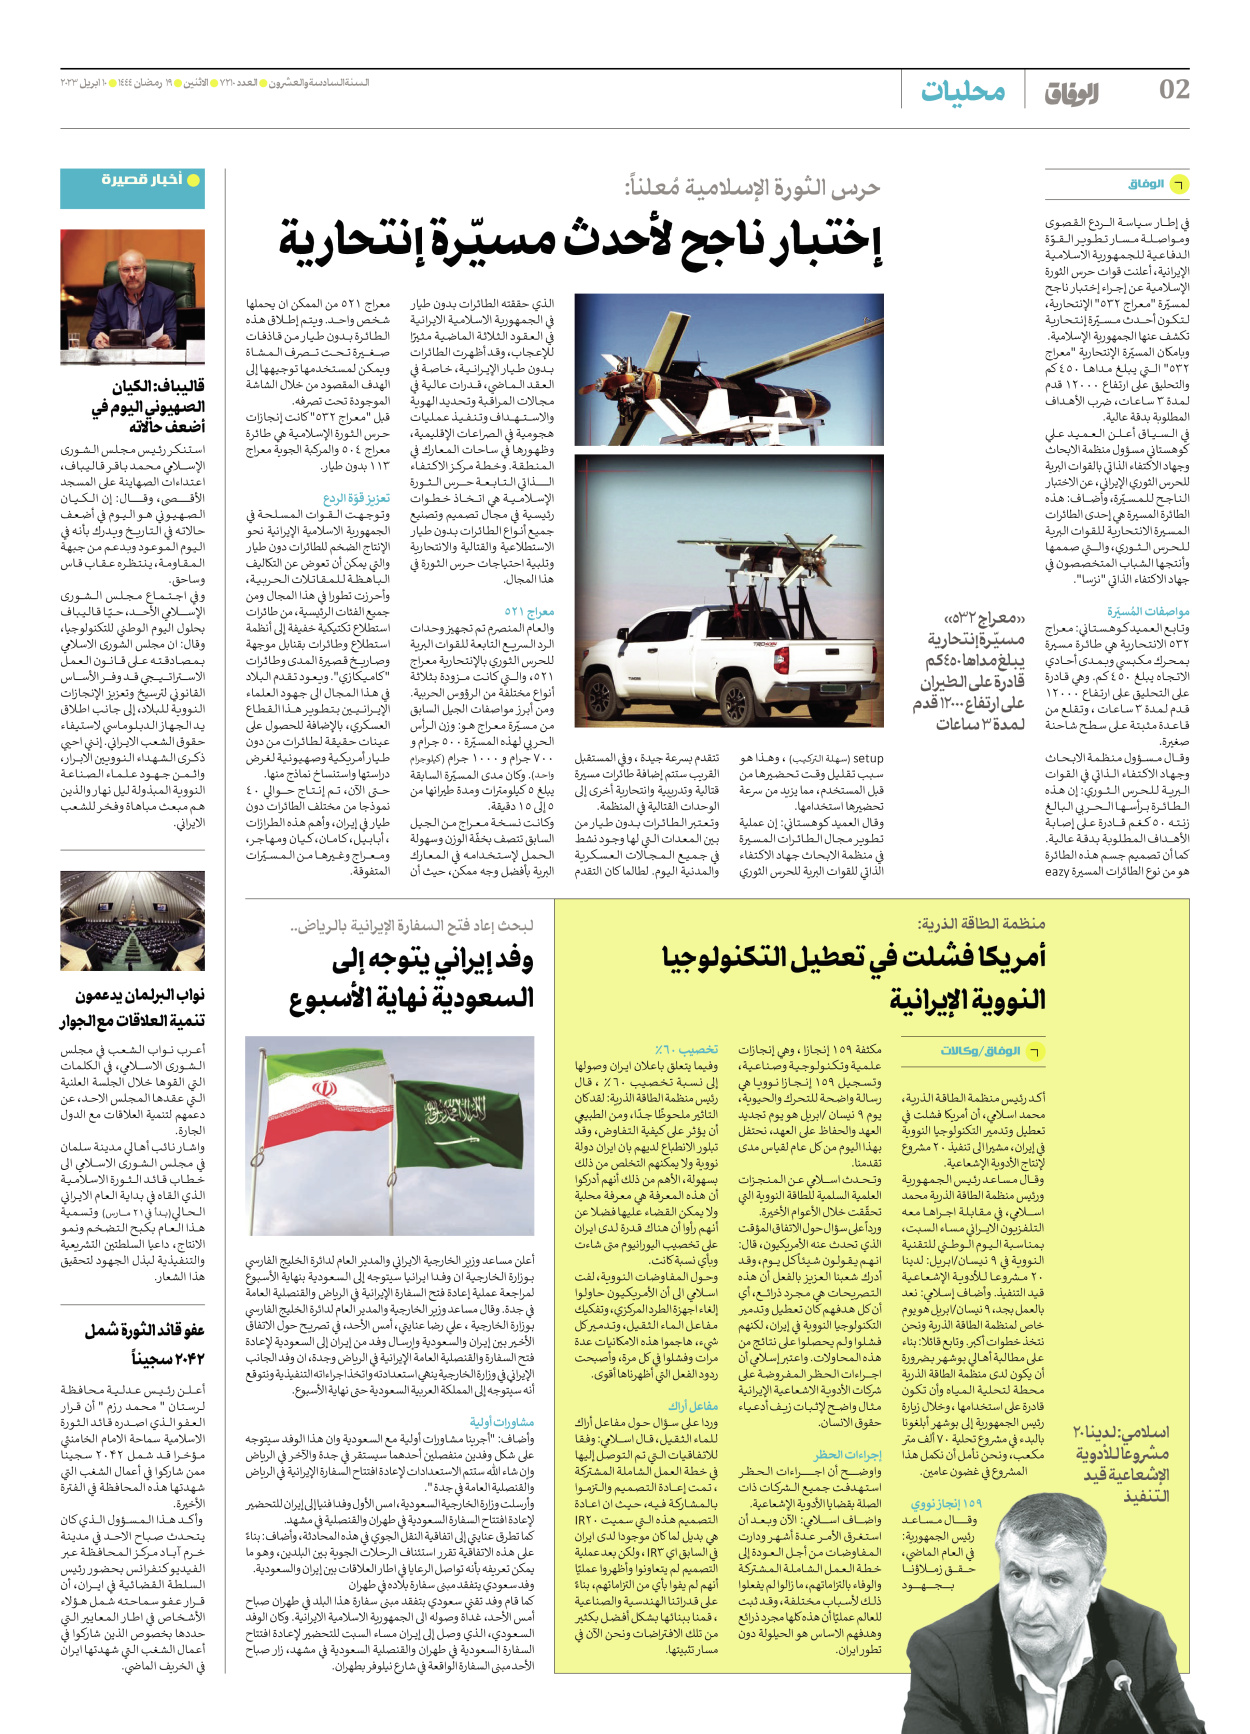 صحیفة ایران الدولیة الوفاق - العدد سبعة آلاف ومائتان وعشرة - ١٠ أبريل ٢٠٢٣ - الصفحة ۲